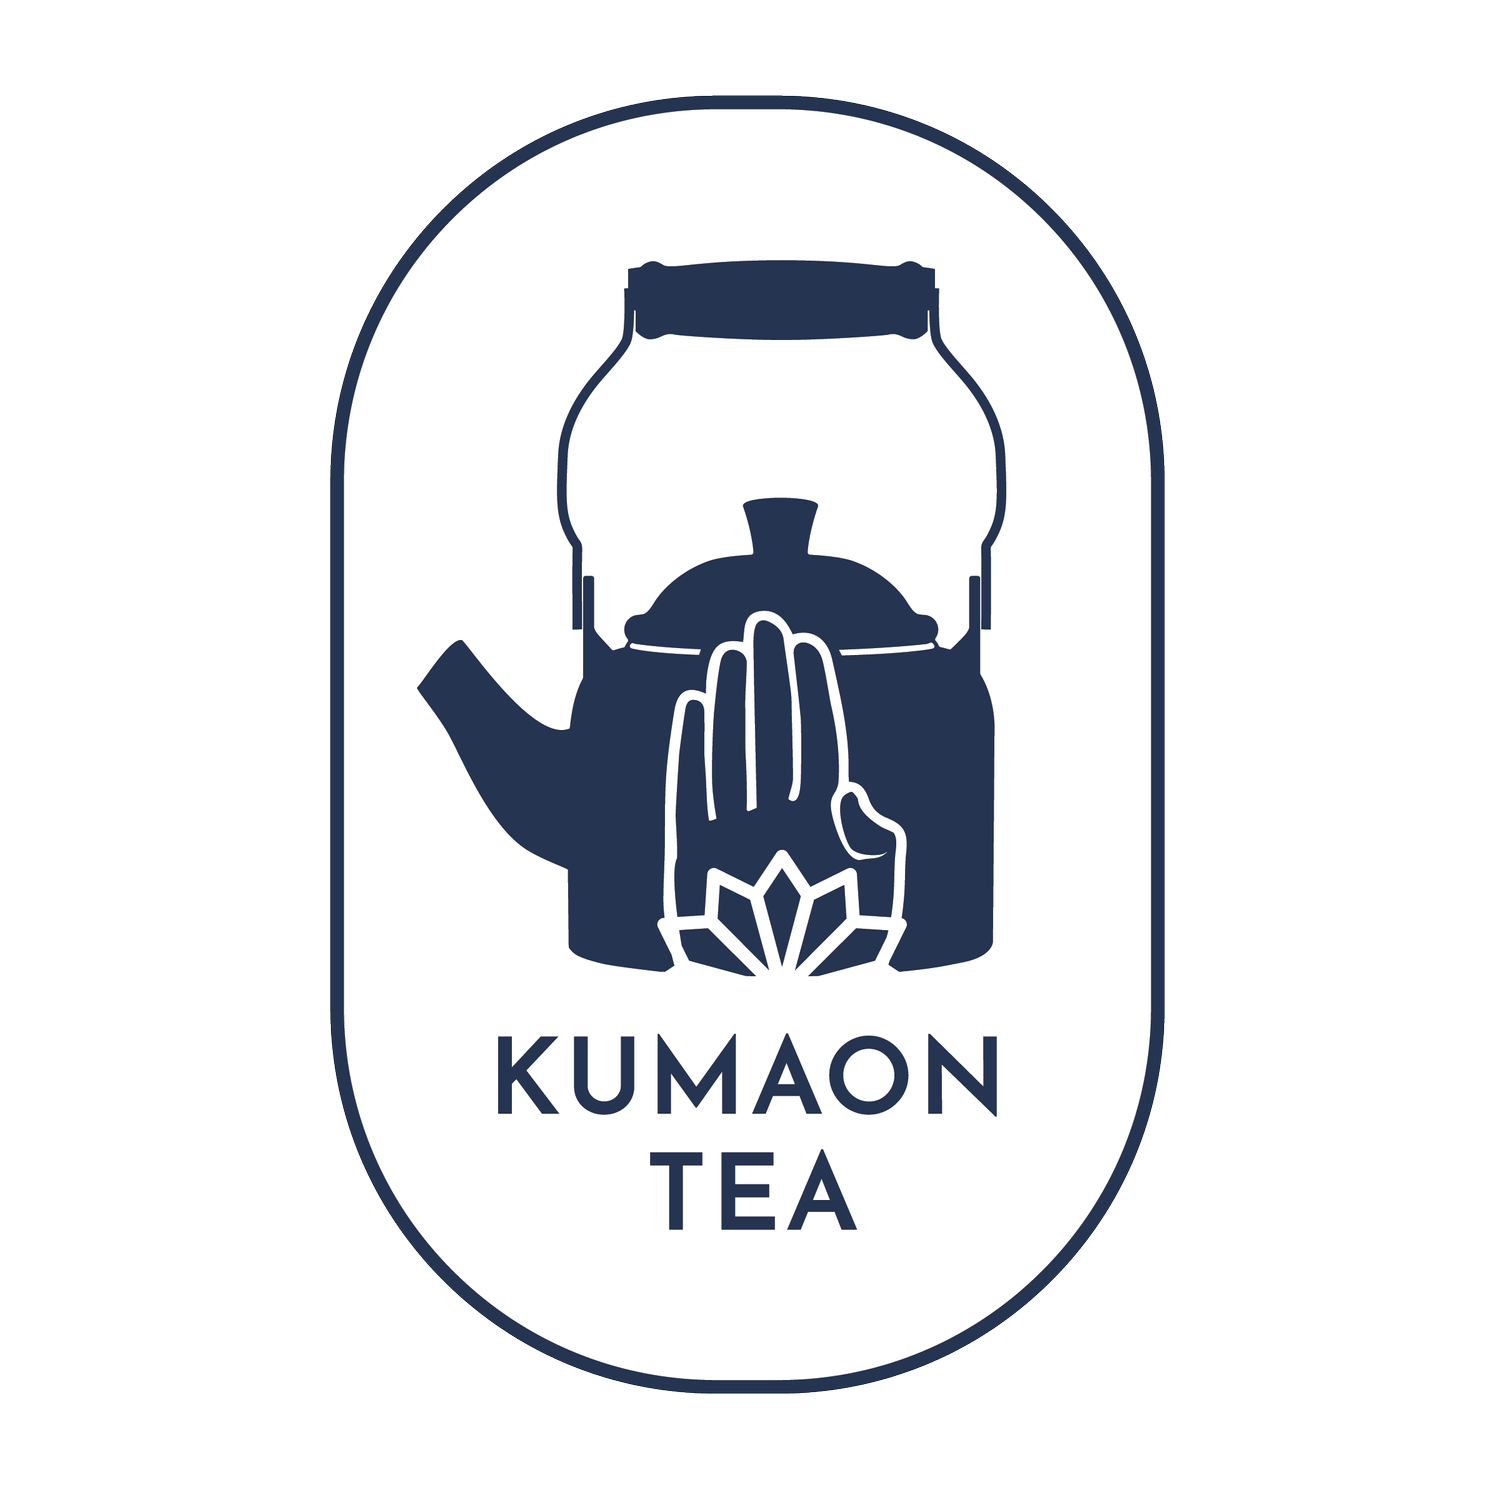 Kumaon Tea